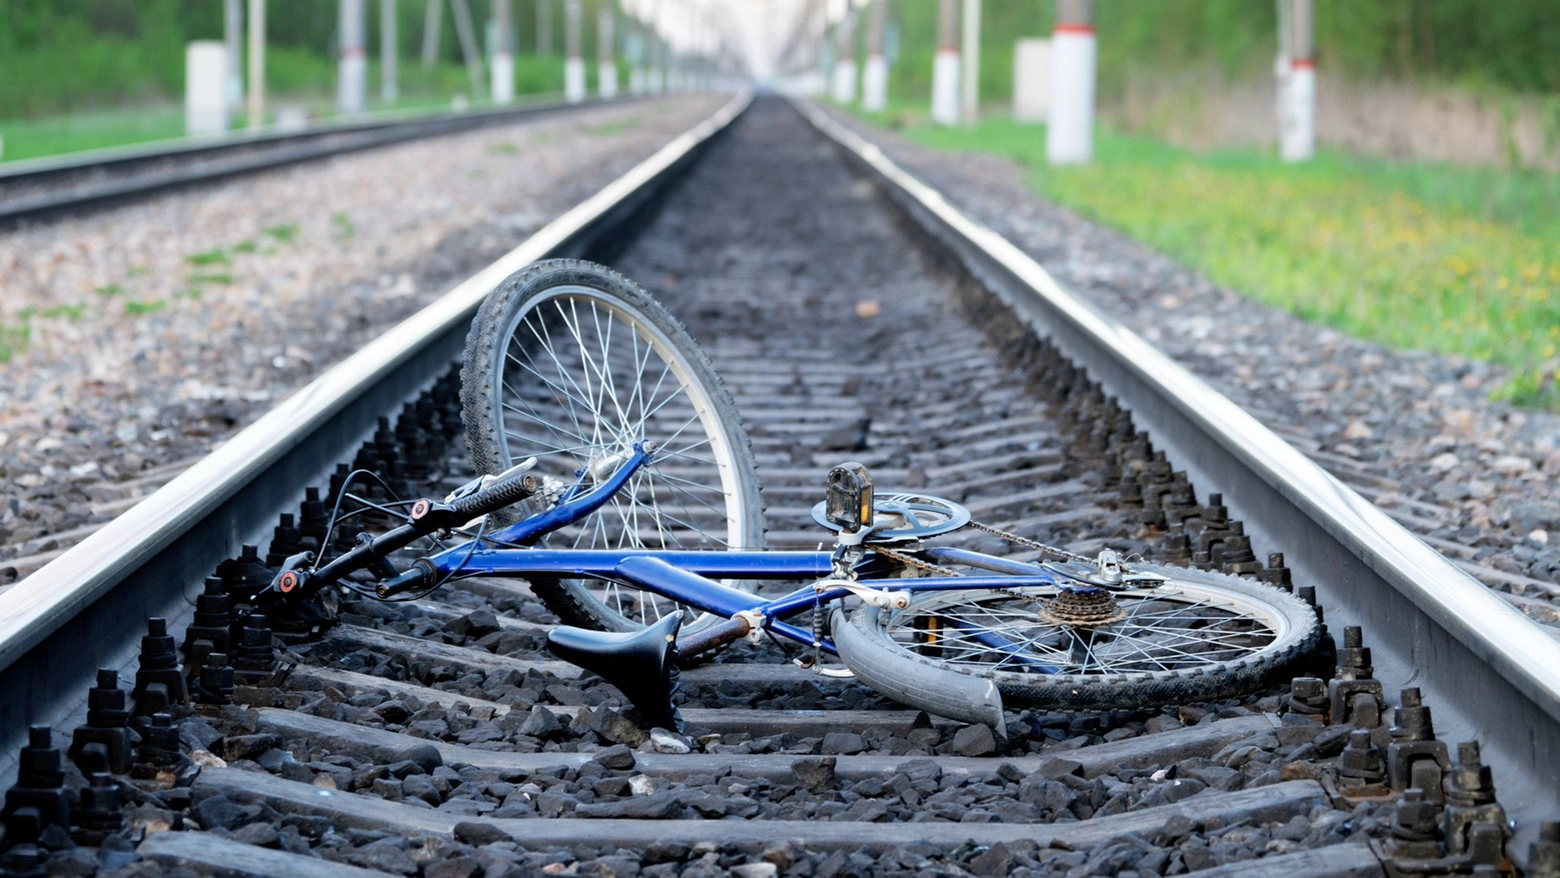 Travolto e ucciso dal treno, la bicicletta trovata poco distante dal luogo della tragedia (Immagine di repertorio)